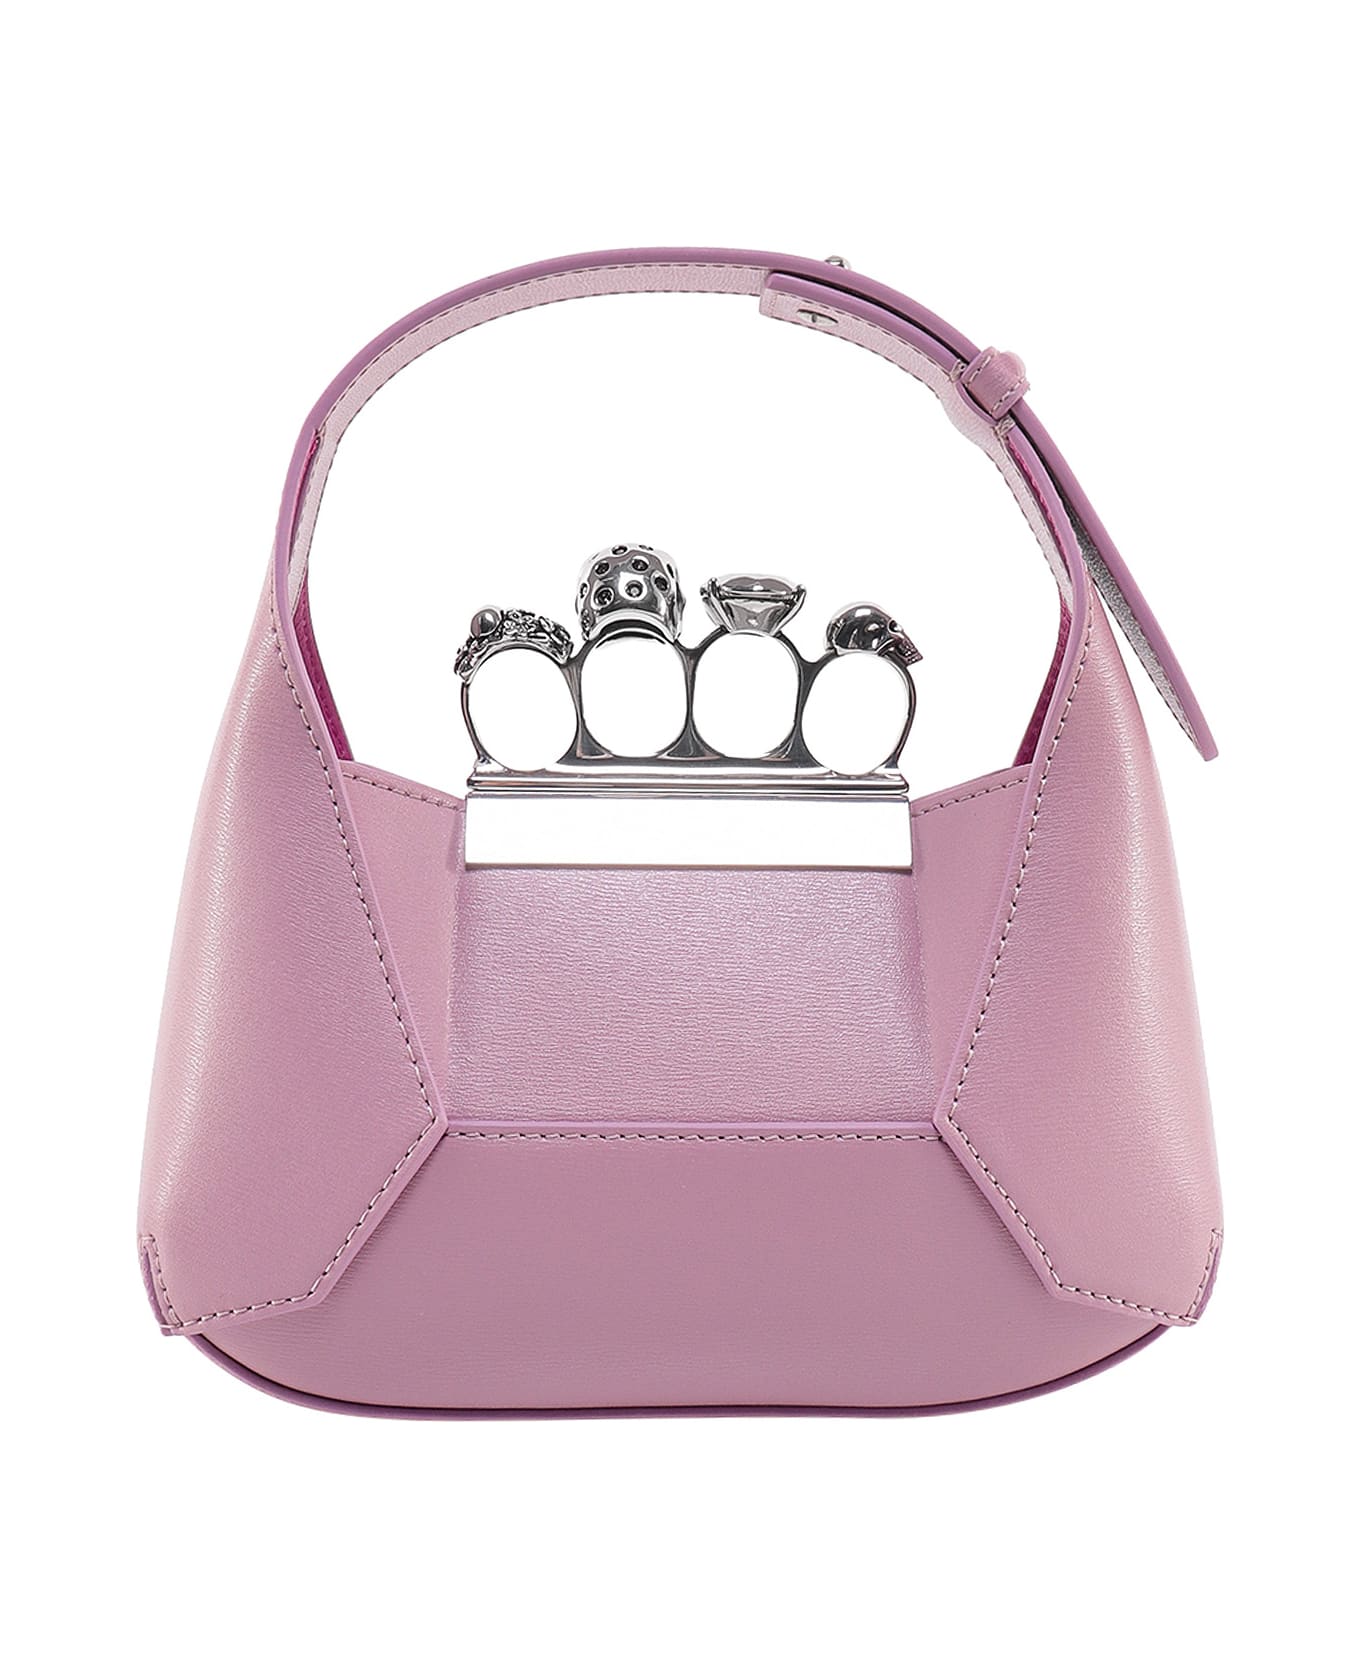 Alexander McQueen Jewelled Handbag - Pink